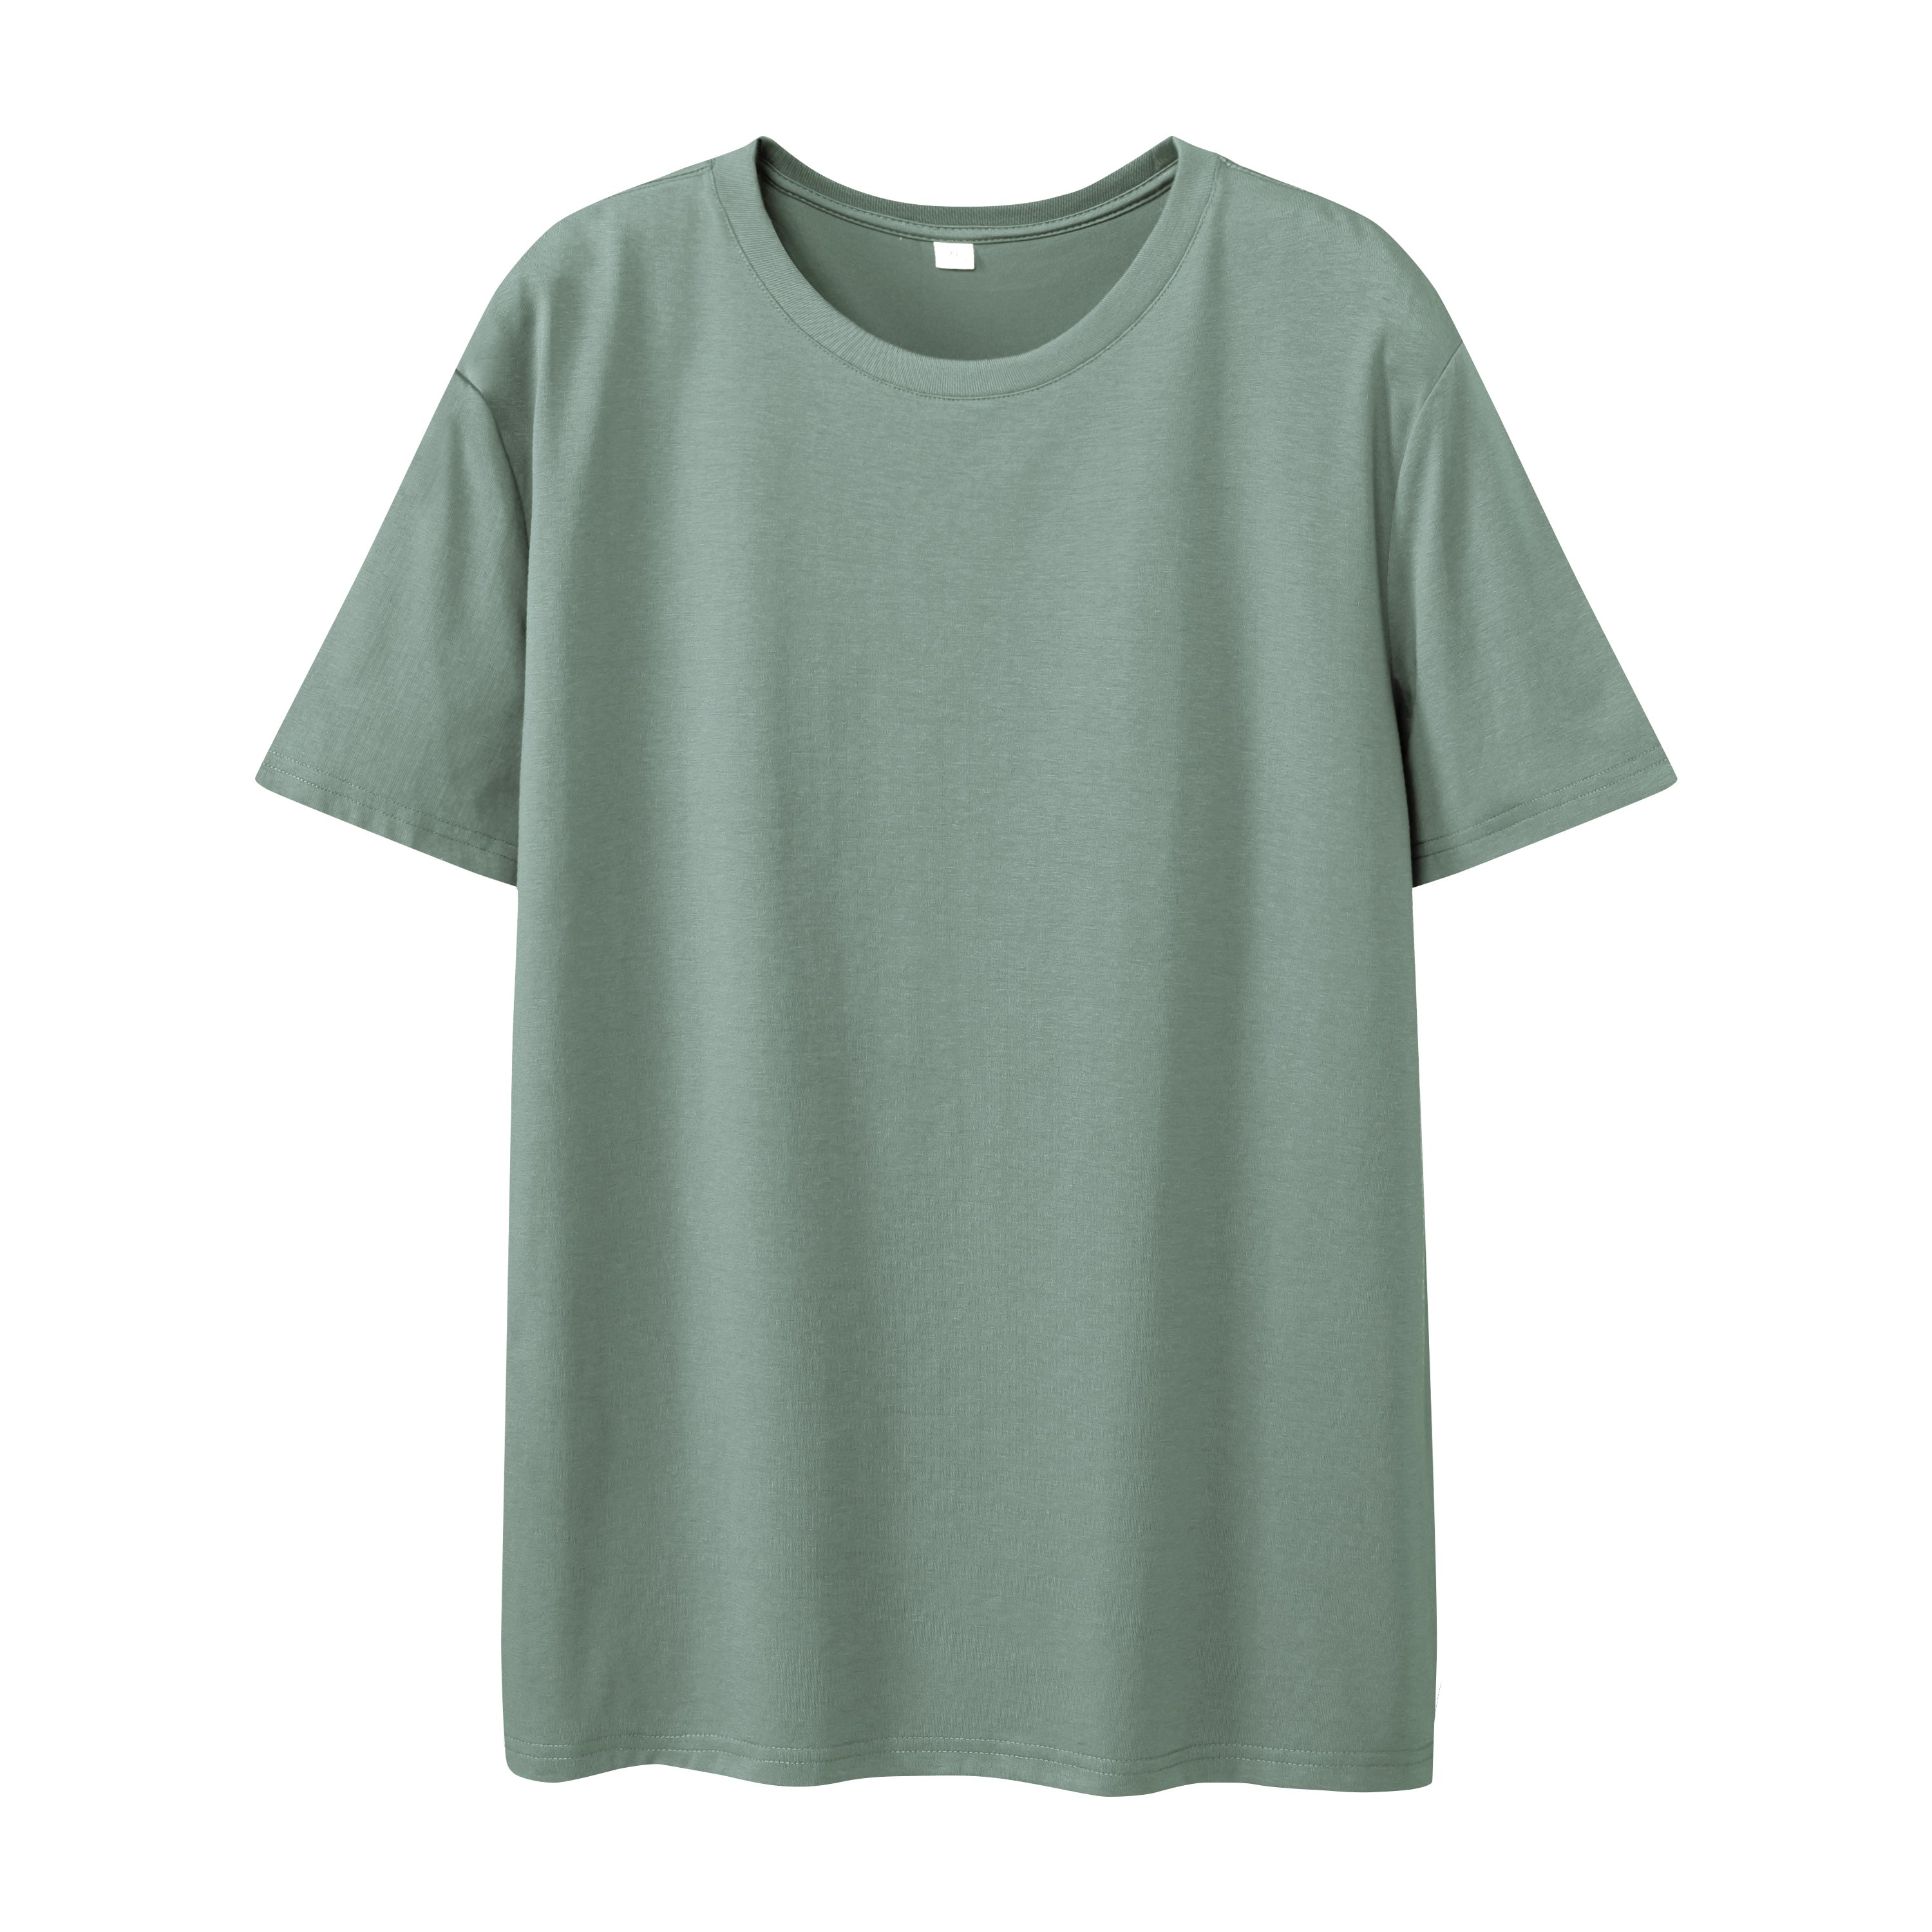 Advanced SORONA Solid T-shirt